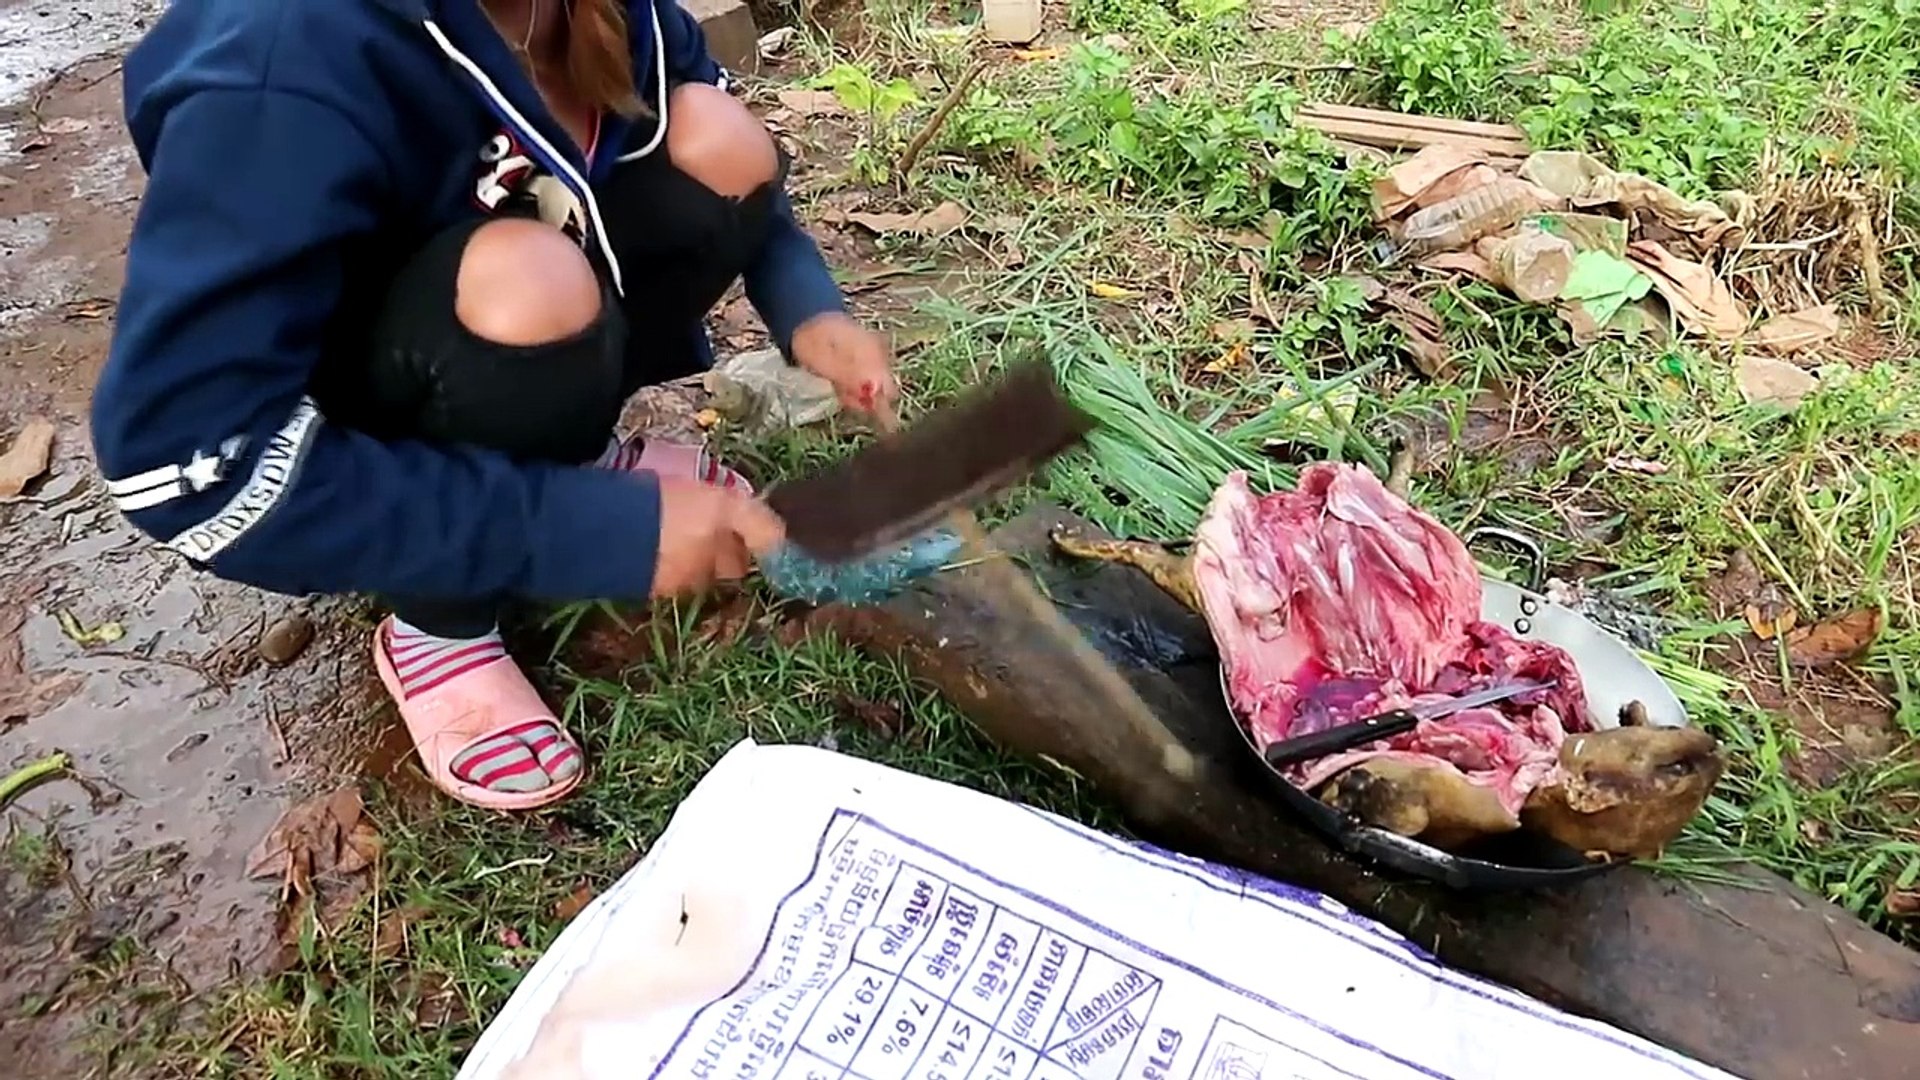 Easy food special - Khmer girl treats meat reindeer